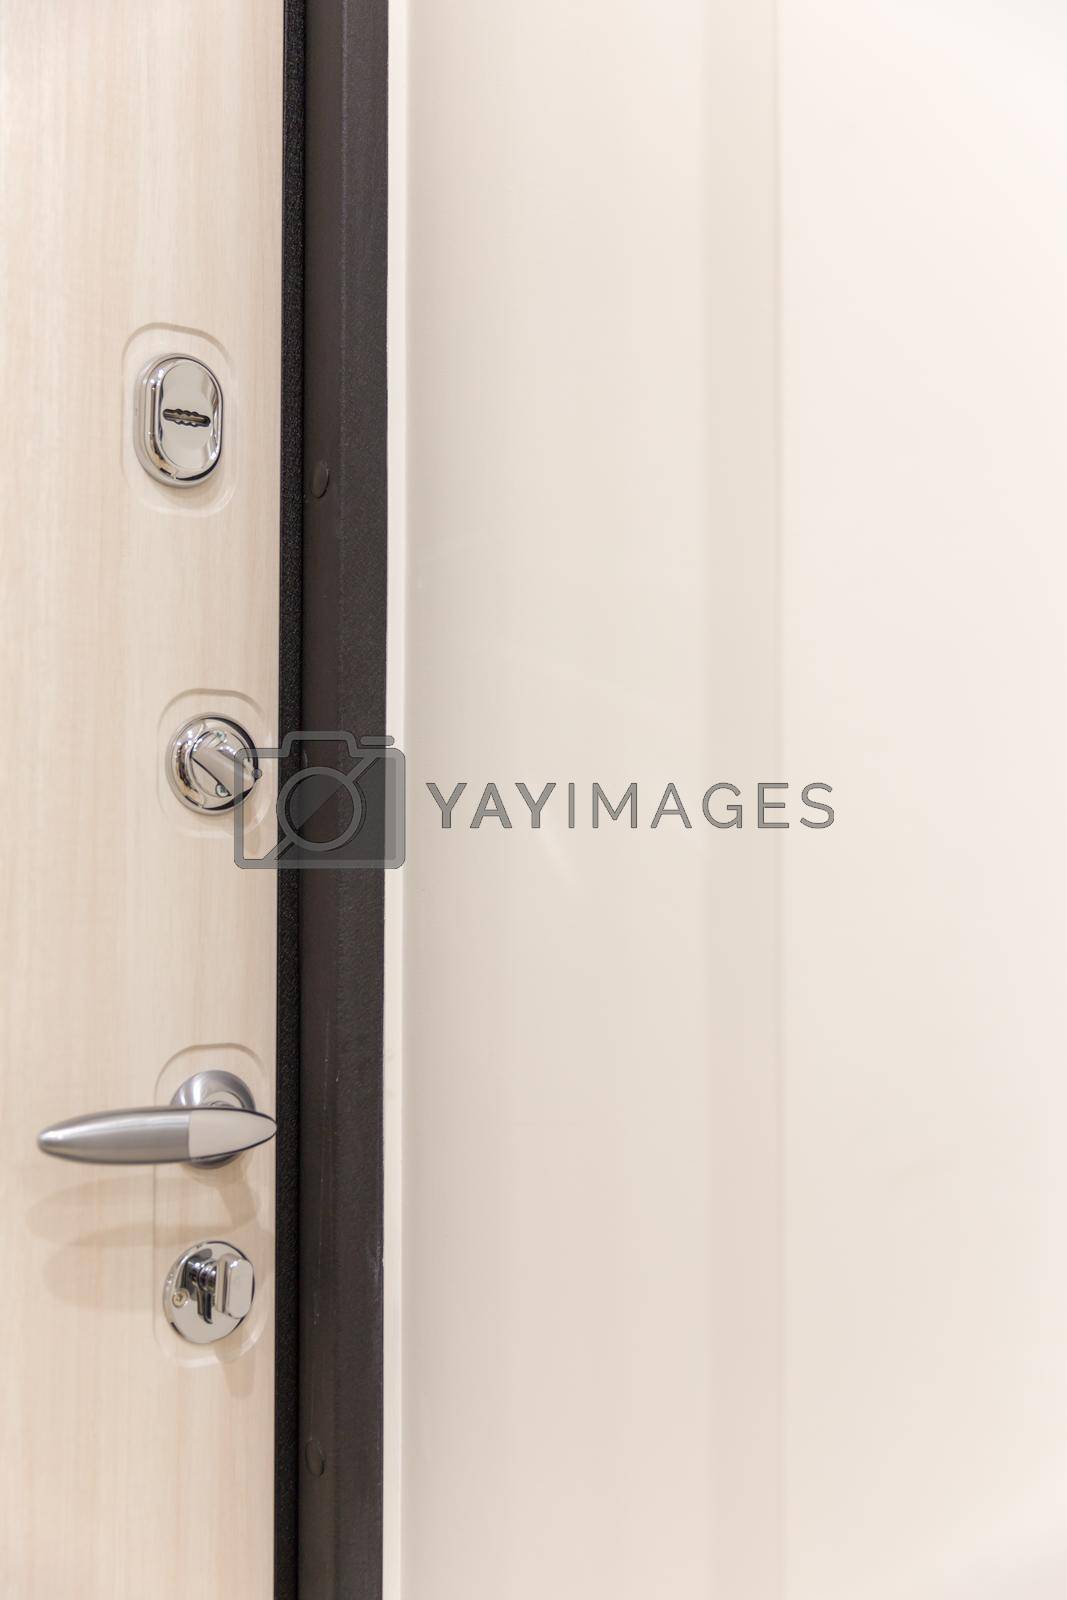 Royalty free image of Door with many locks by Mariakray